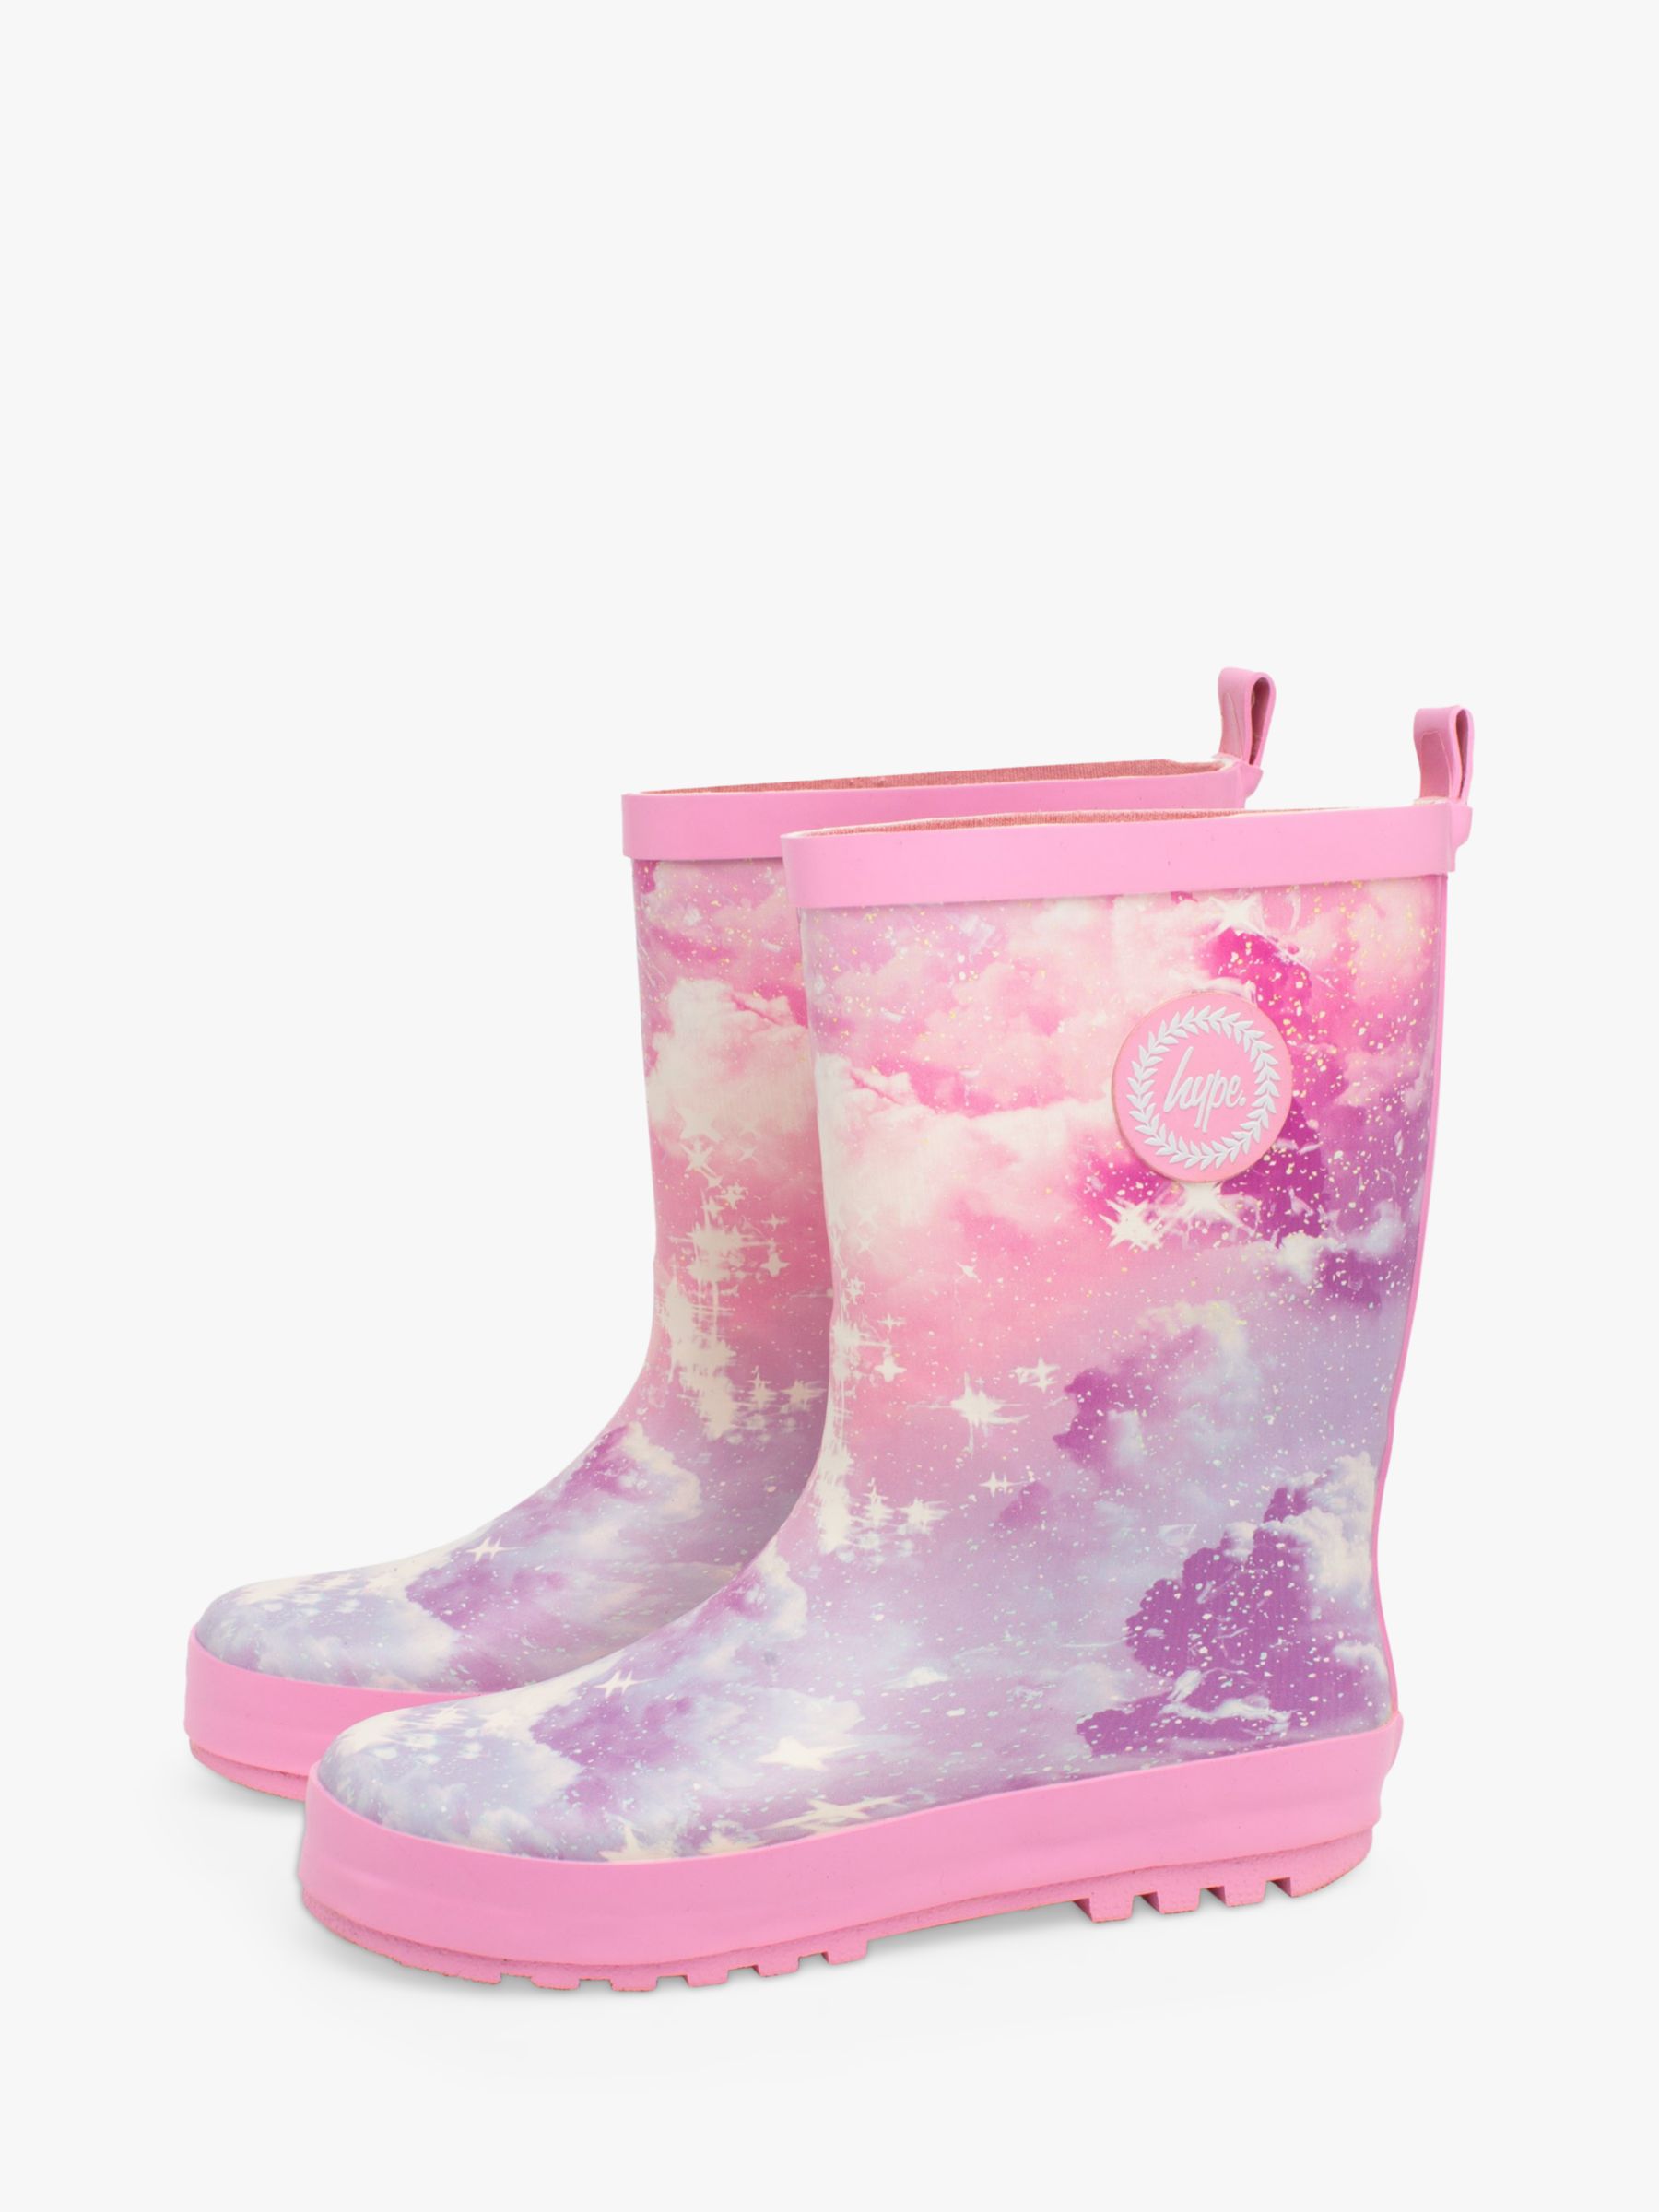 Hype Kids' Sparkle Cloud Crest Wellington Boots, Pink, 11.5 - 12.5 Jnr